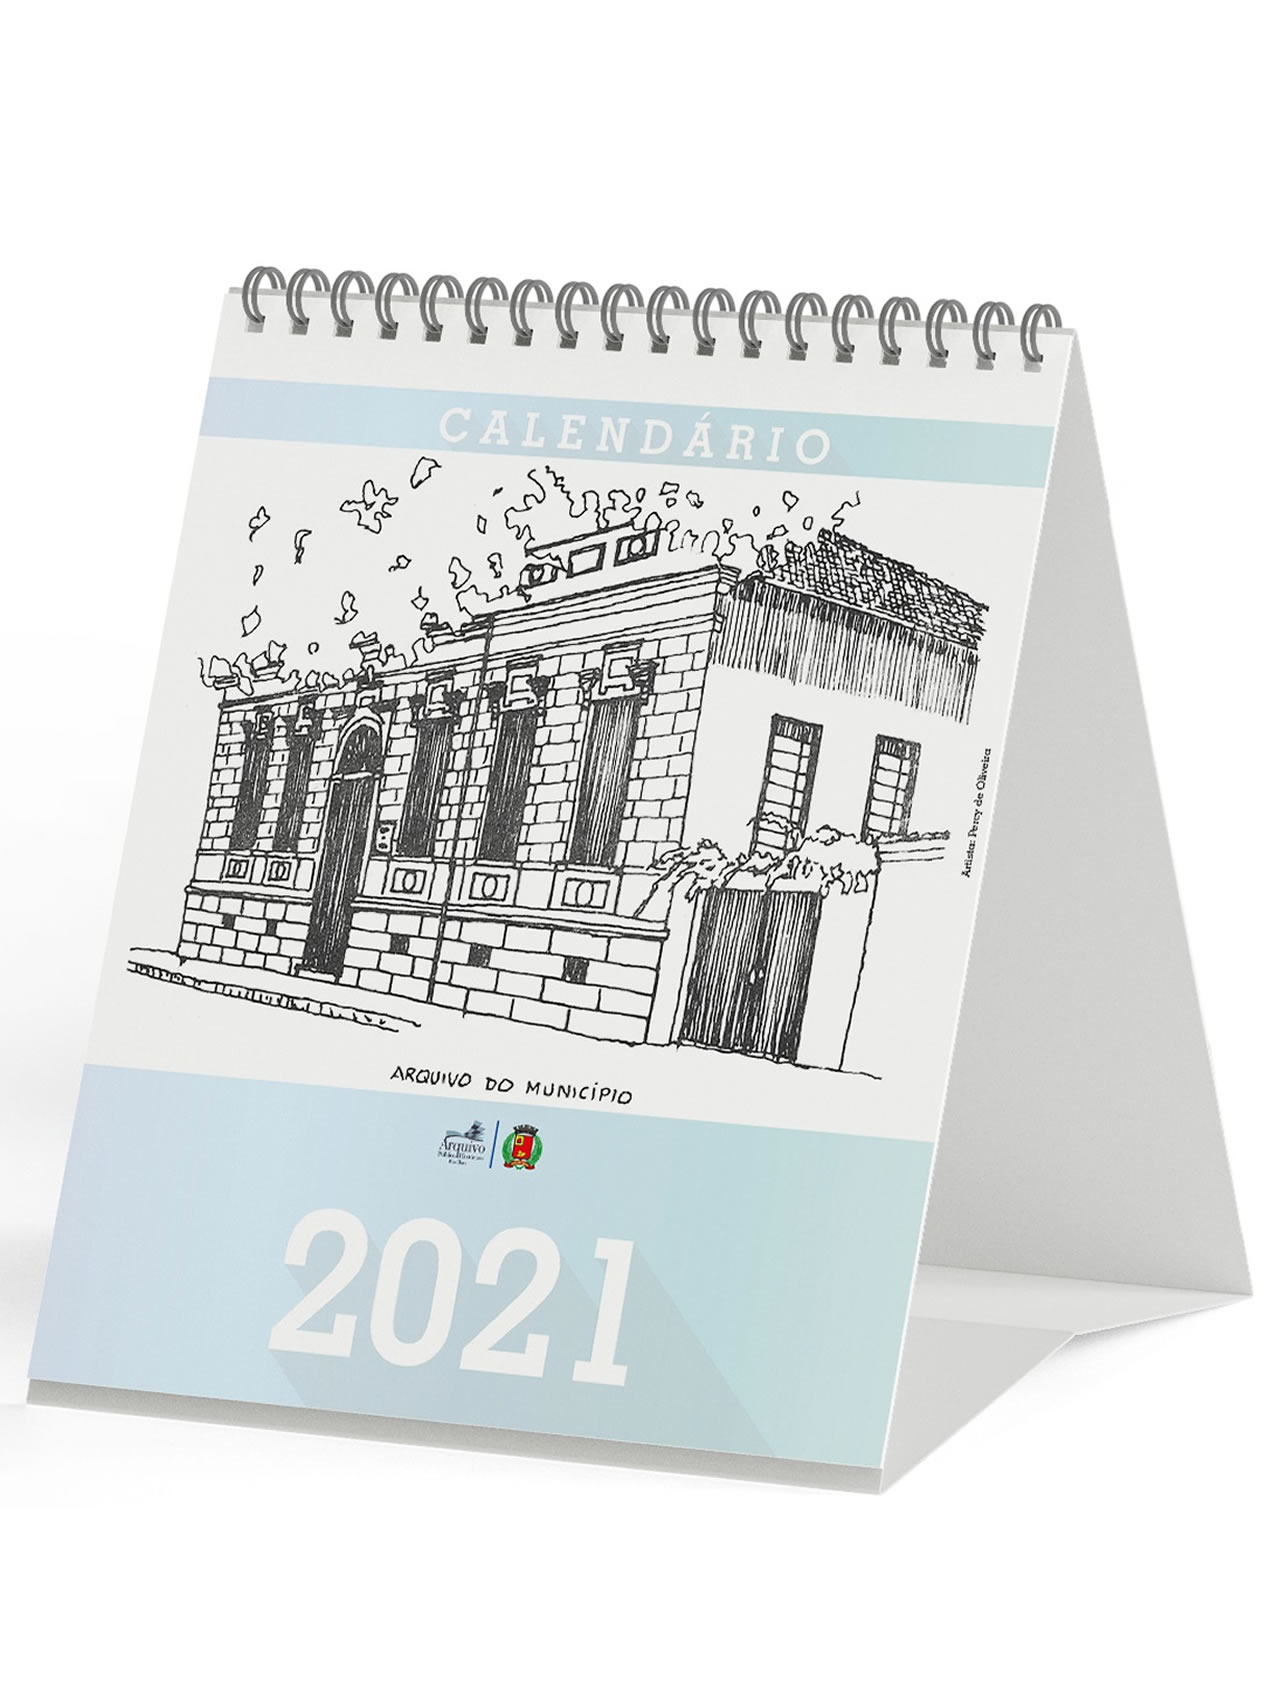 Calendário rio-clarense 2021